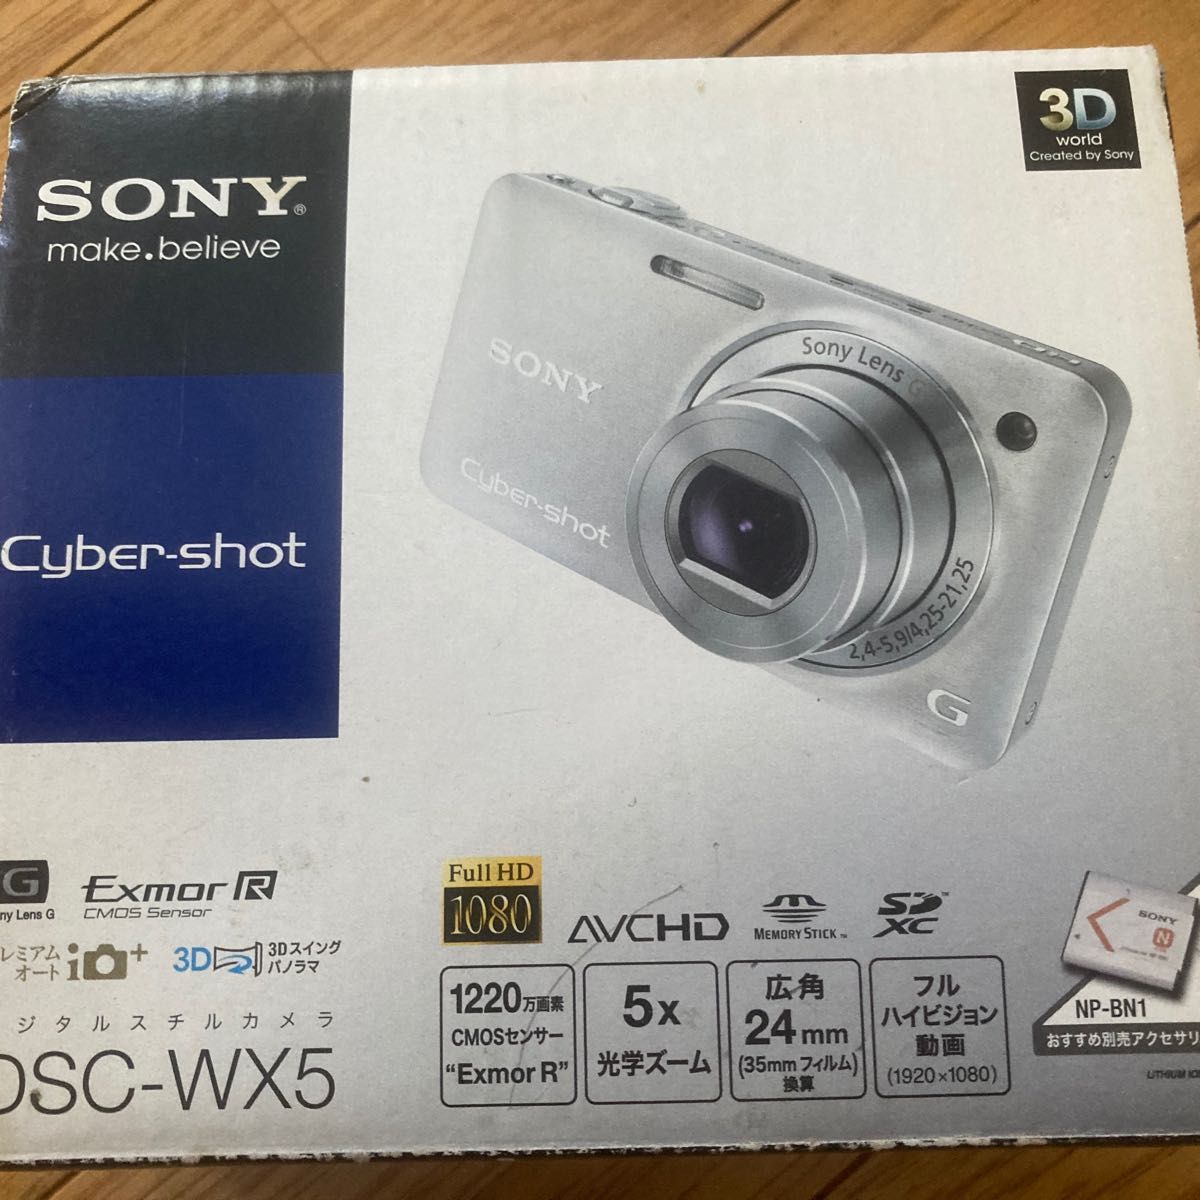 ソニー SONY デジタルカメラ Cybershot WX5 (1220万画素CMOS/光学x5) シルバー DSC-WX5/S